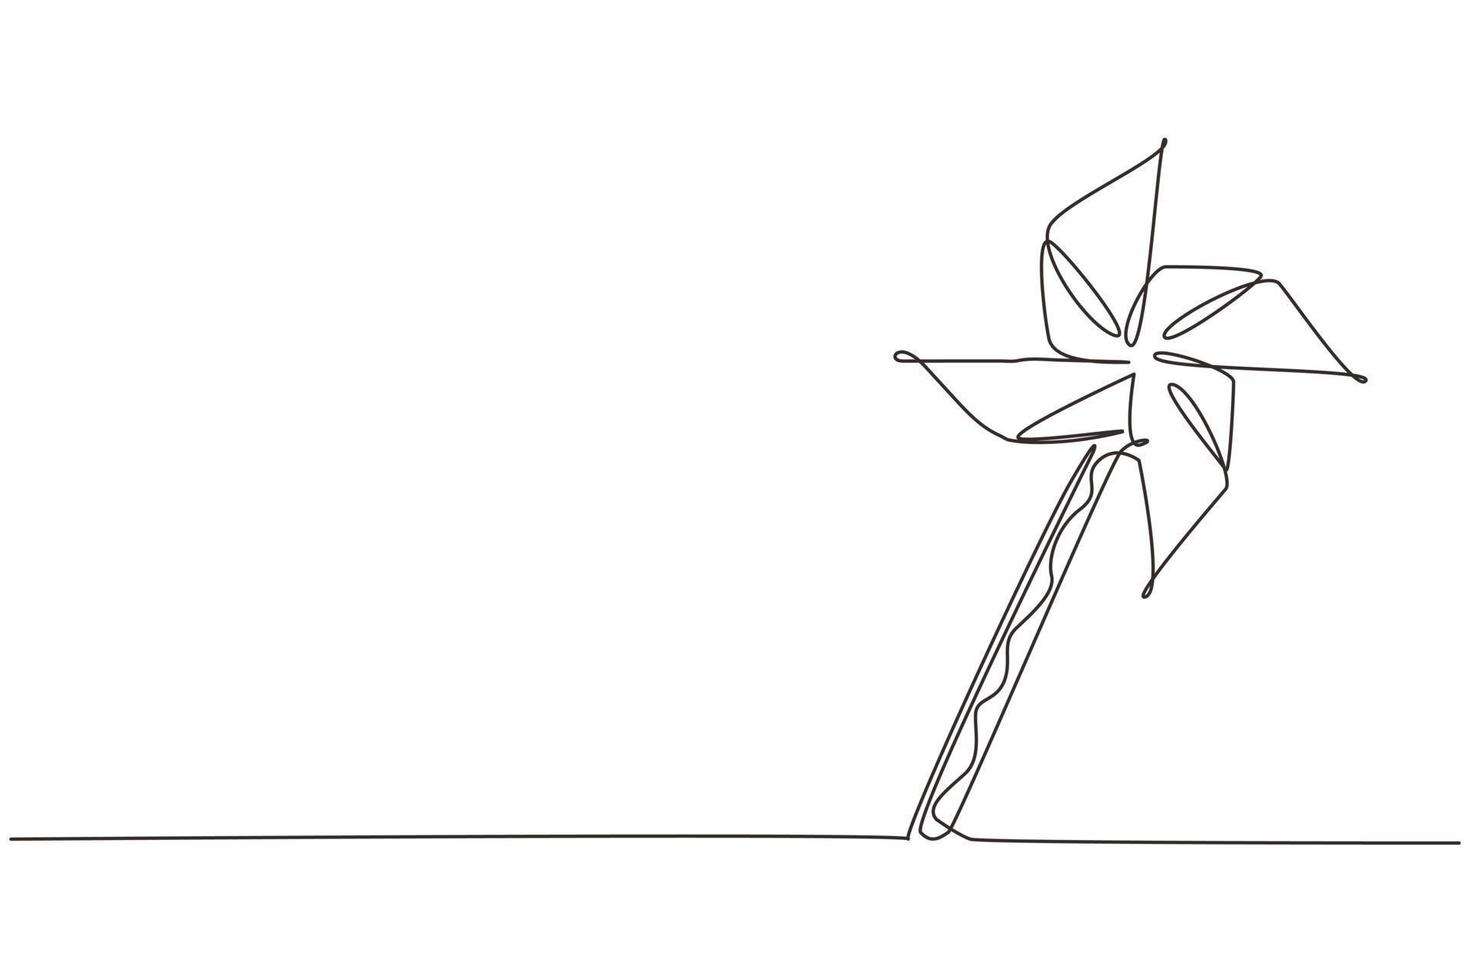 moulin à vent en papier à dessin en ligne continue. moulin à vent en papier origami. équipement de jeu représentant un moulinet jouet. jouet pour enfants tournant dans le vent. une ligne dessiner illustration vectorielle de conception graphique vecteur